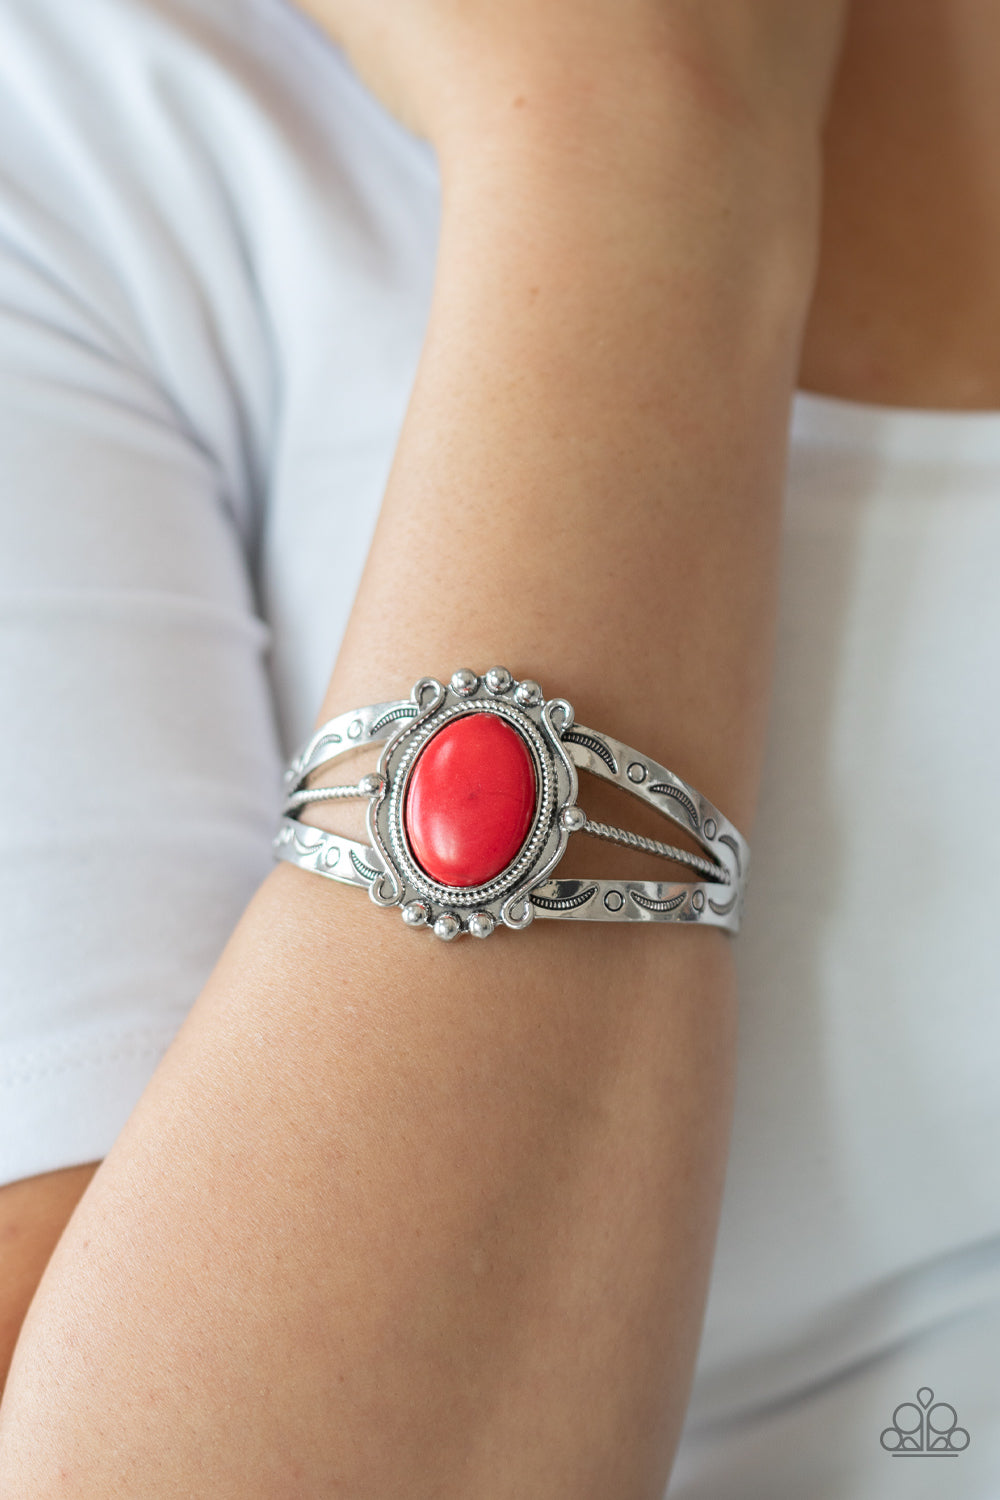 Paparazzi Very TERRA-torial - Red Stone - Bracelet - $5 Jewelry with Ashley Swint